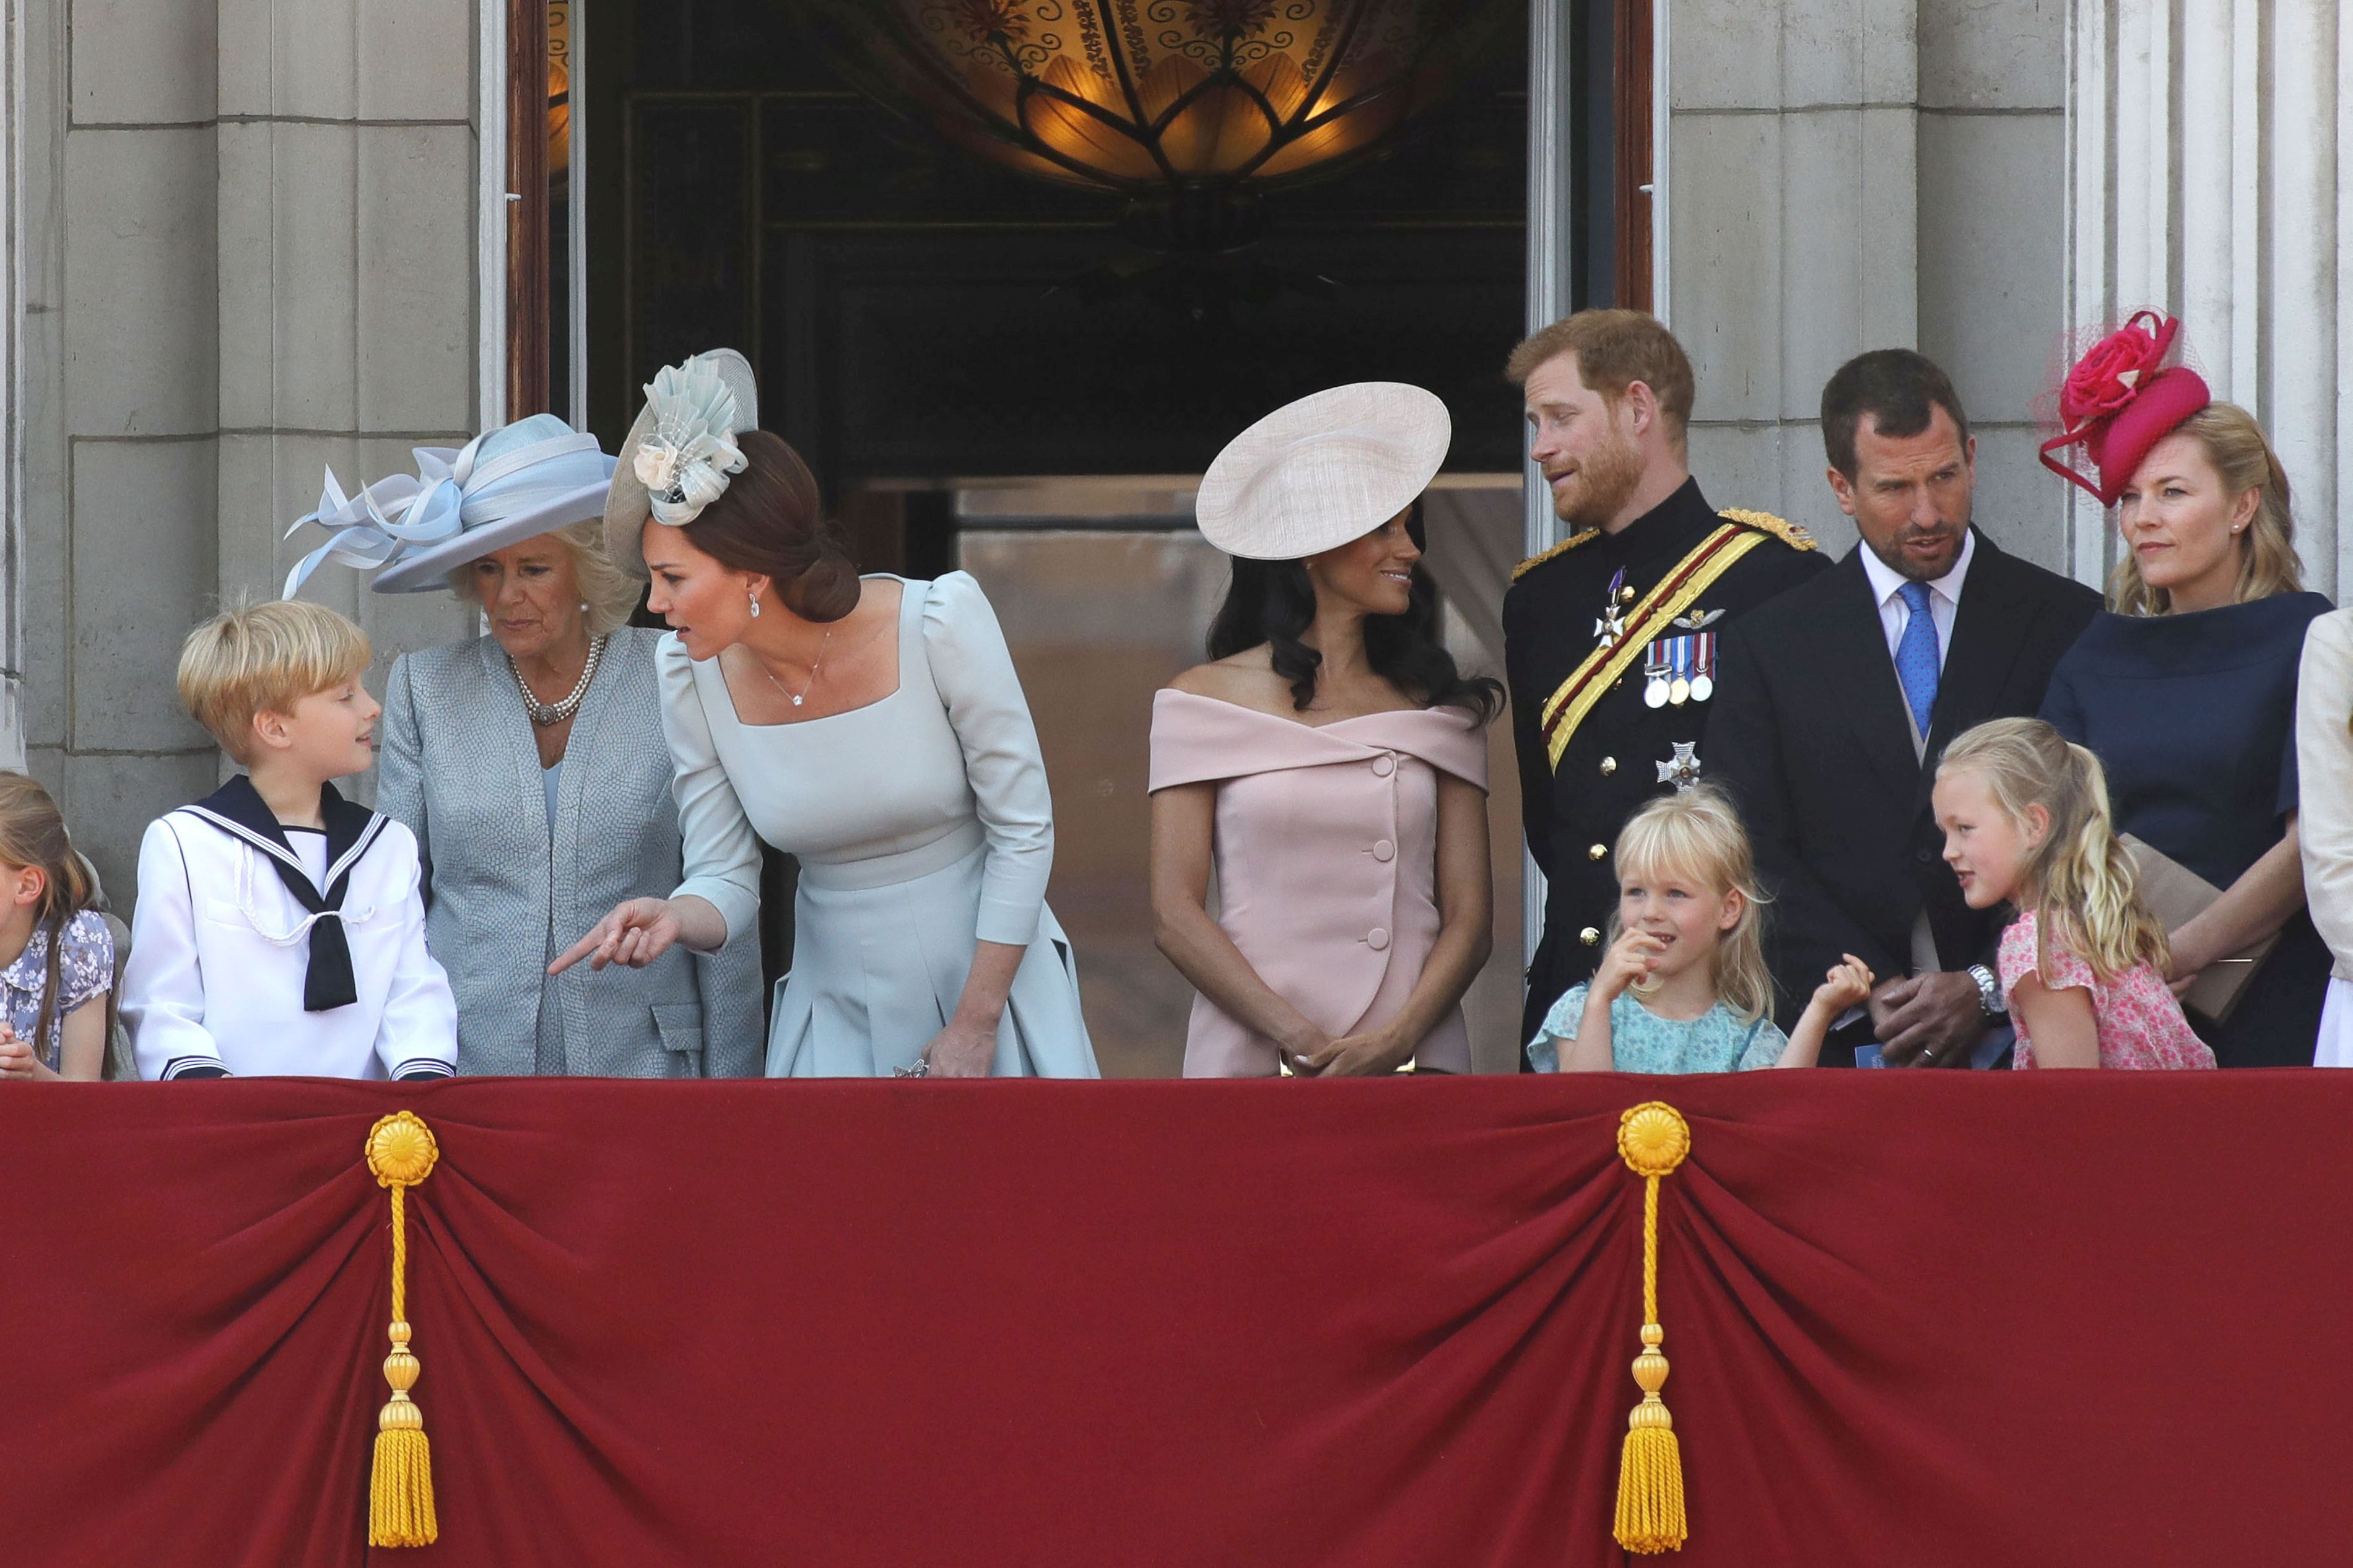 După nunta prinţului Harry cu actriţa Meghan Markle, urmează o nouă căsătorie istorică în familia regală